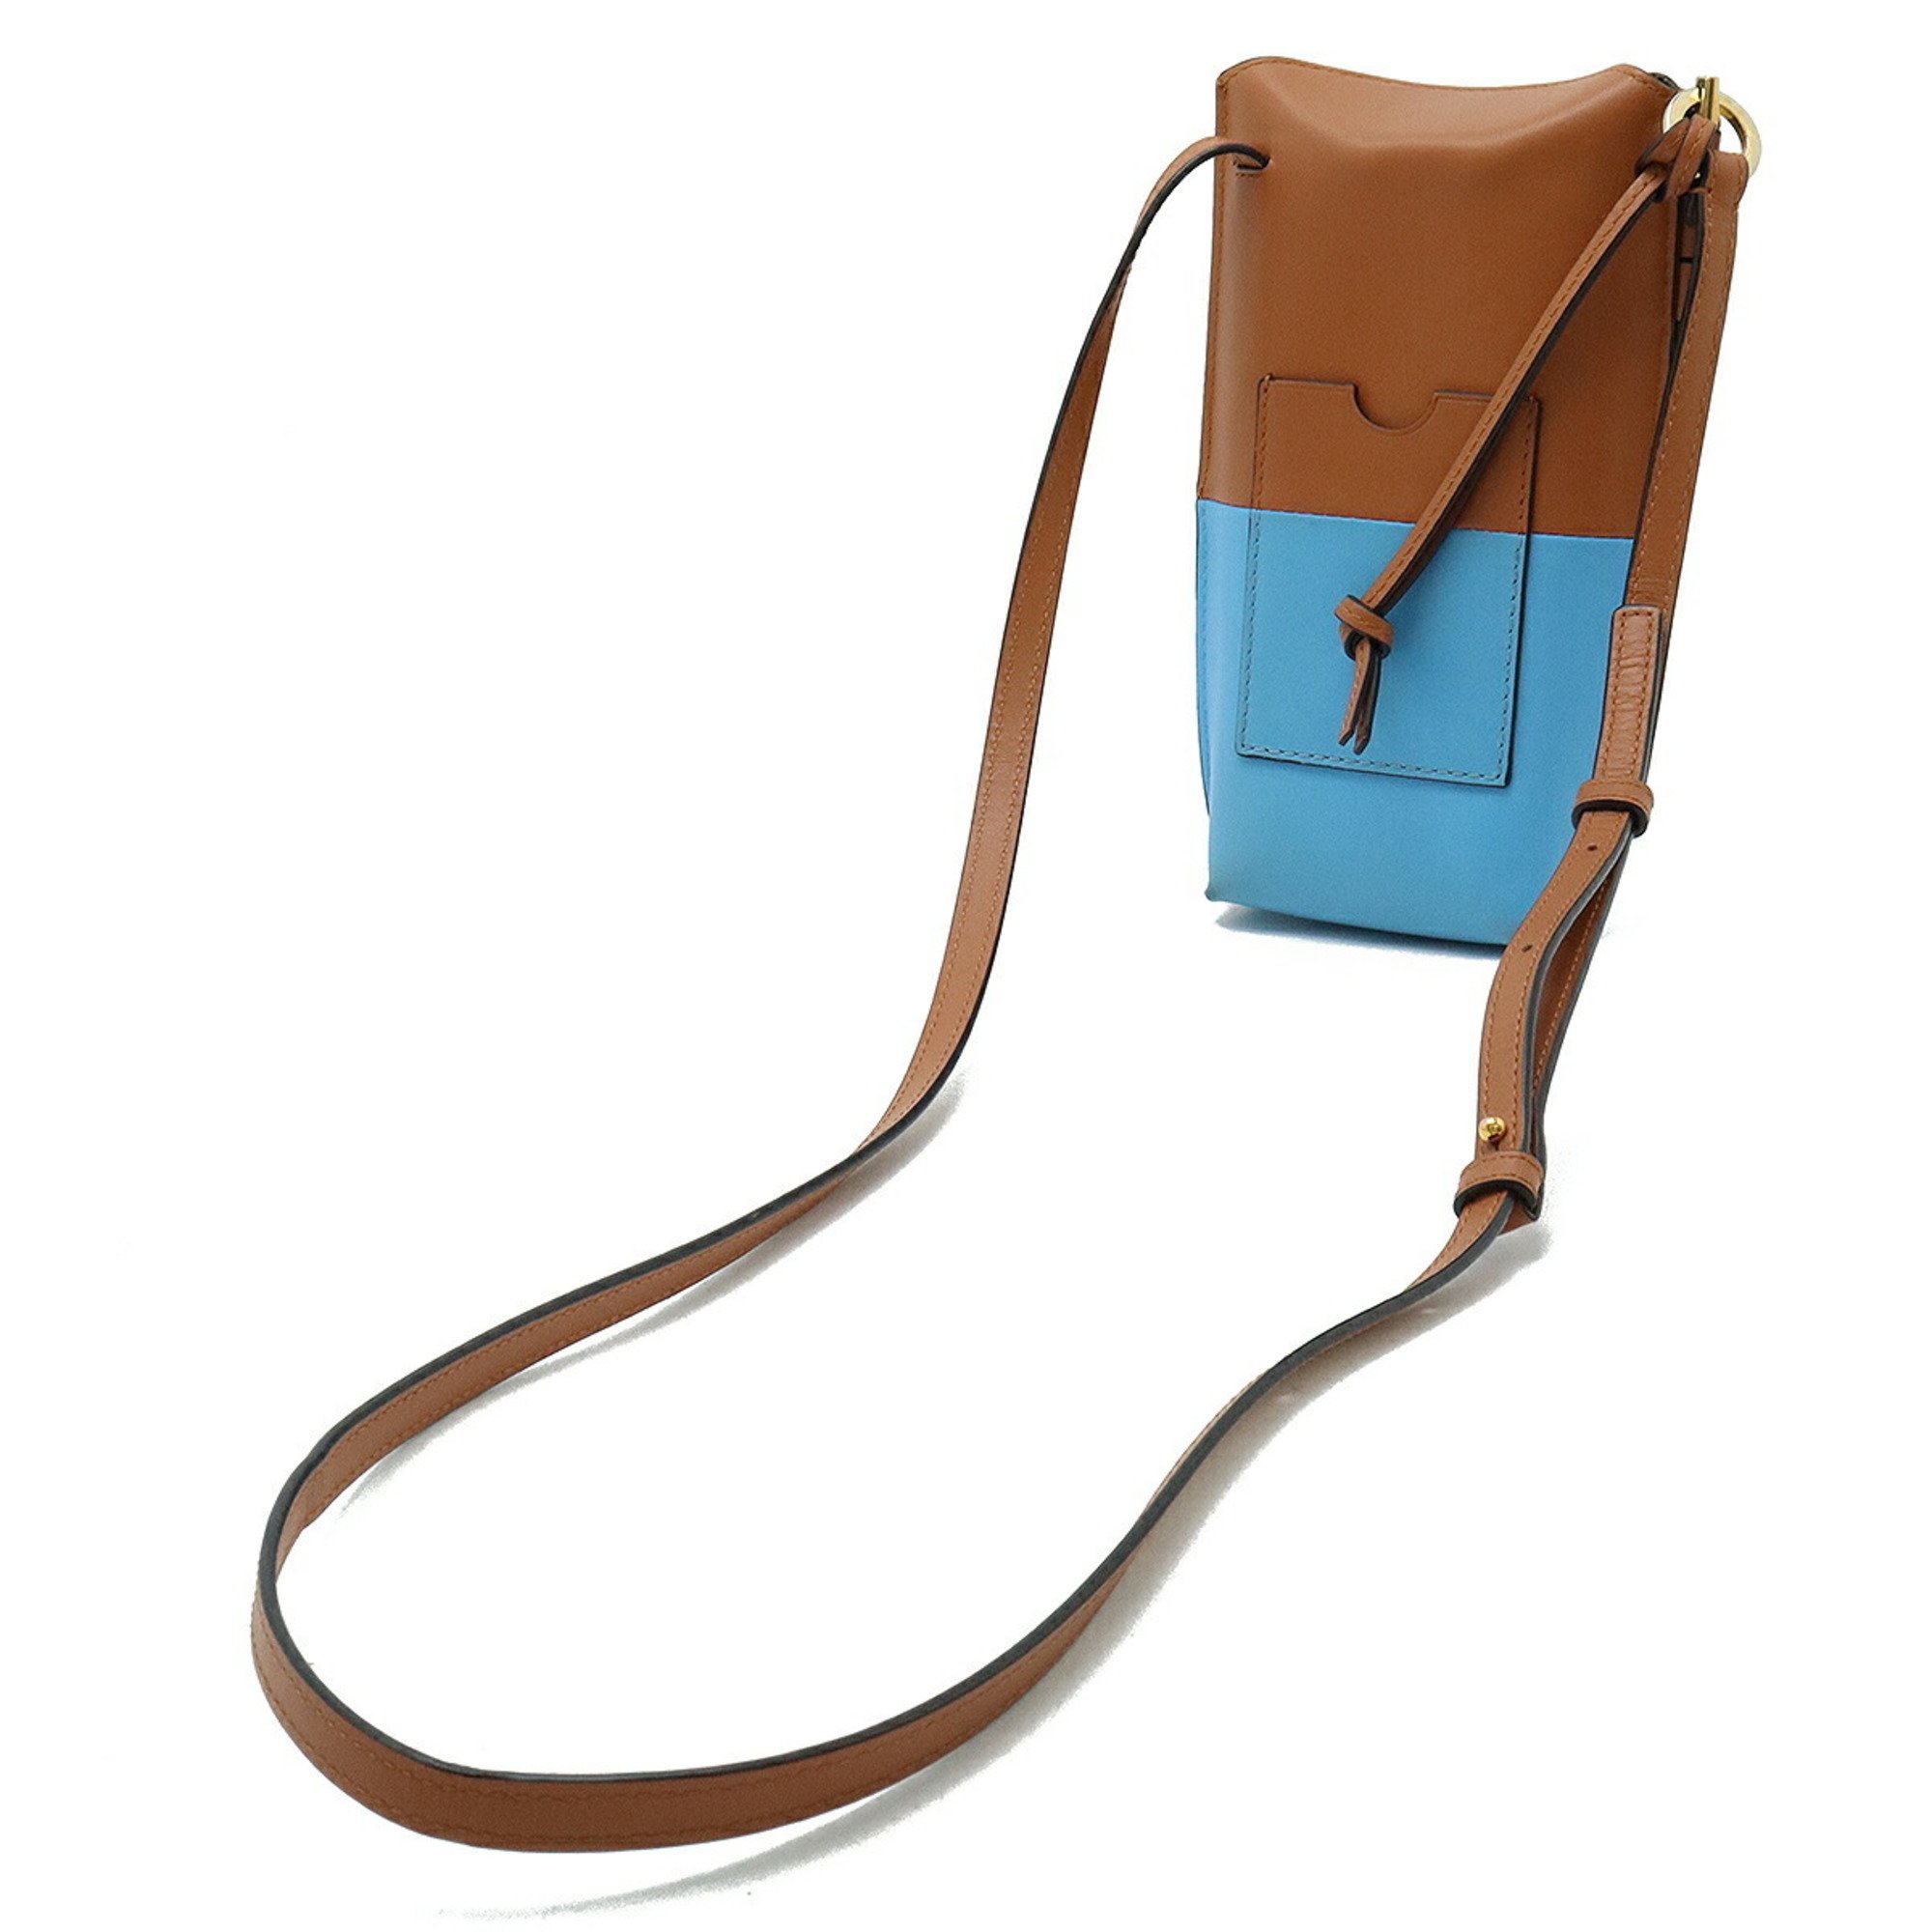 LOEWE Anagram Gate Pocket Shoulder Bag Pouch Pochette Soft Calf Leather Brown Light Blue 113.54IZ42